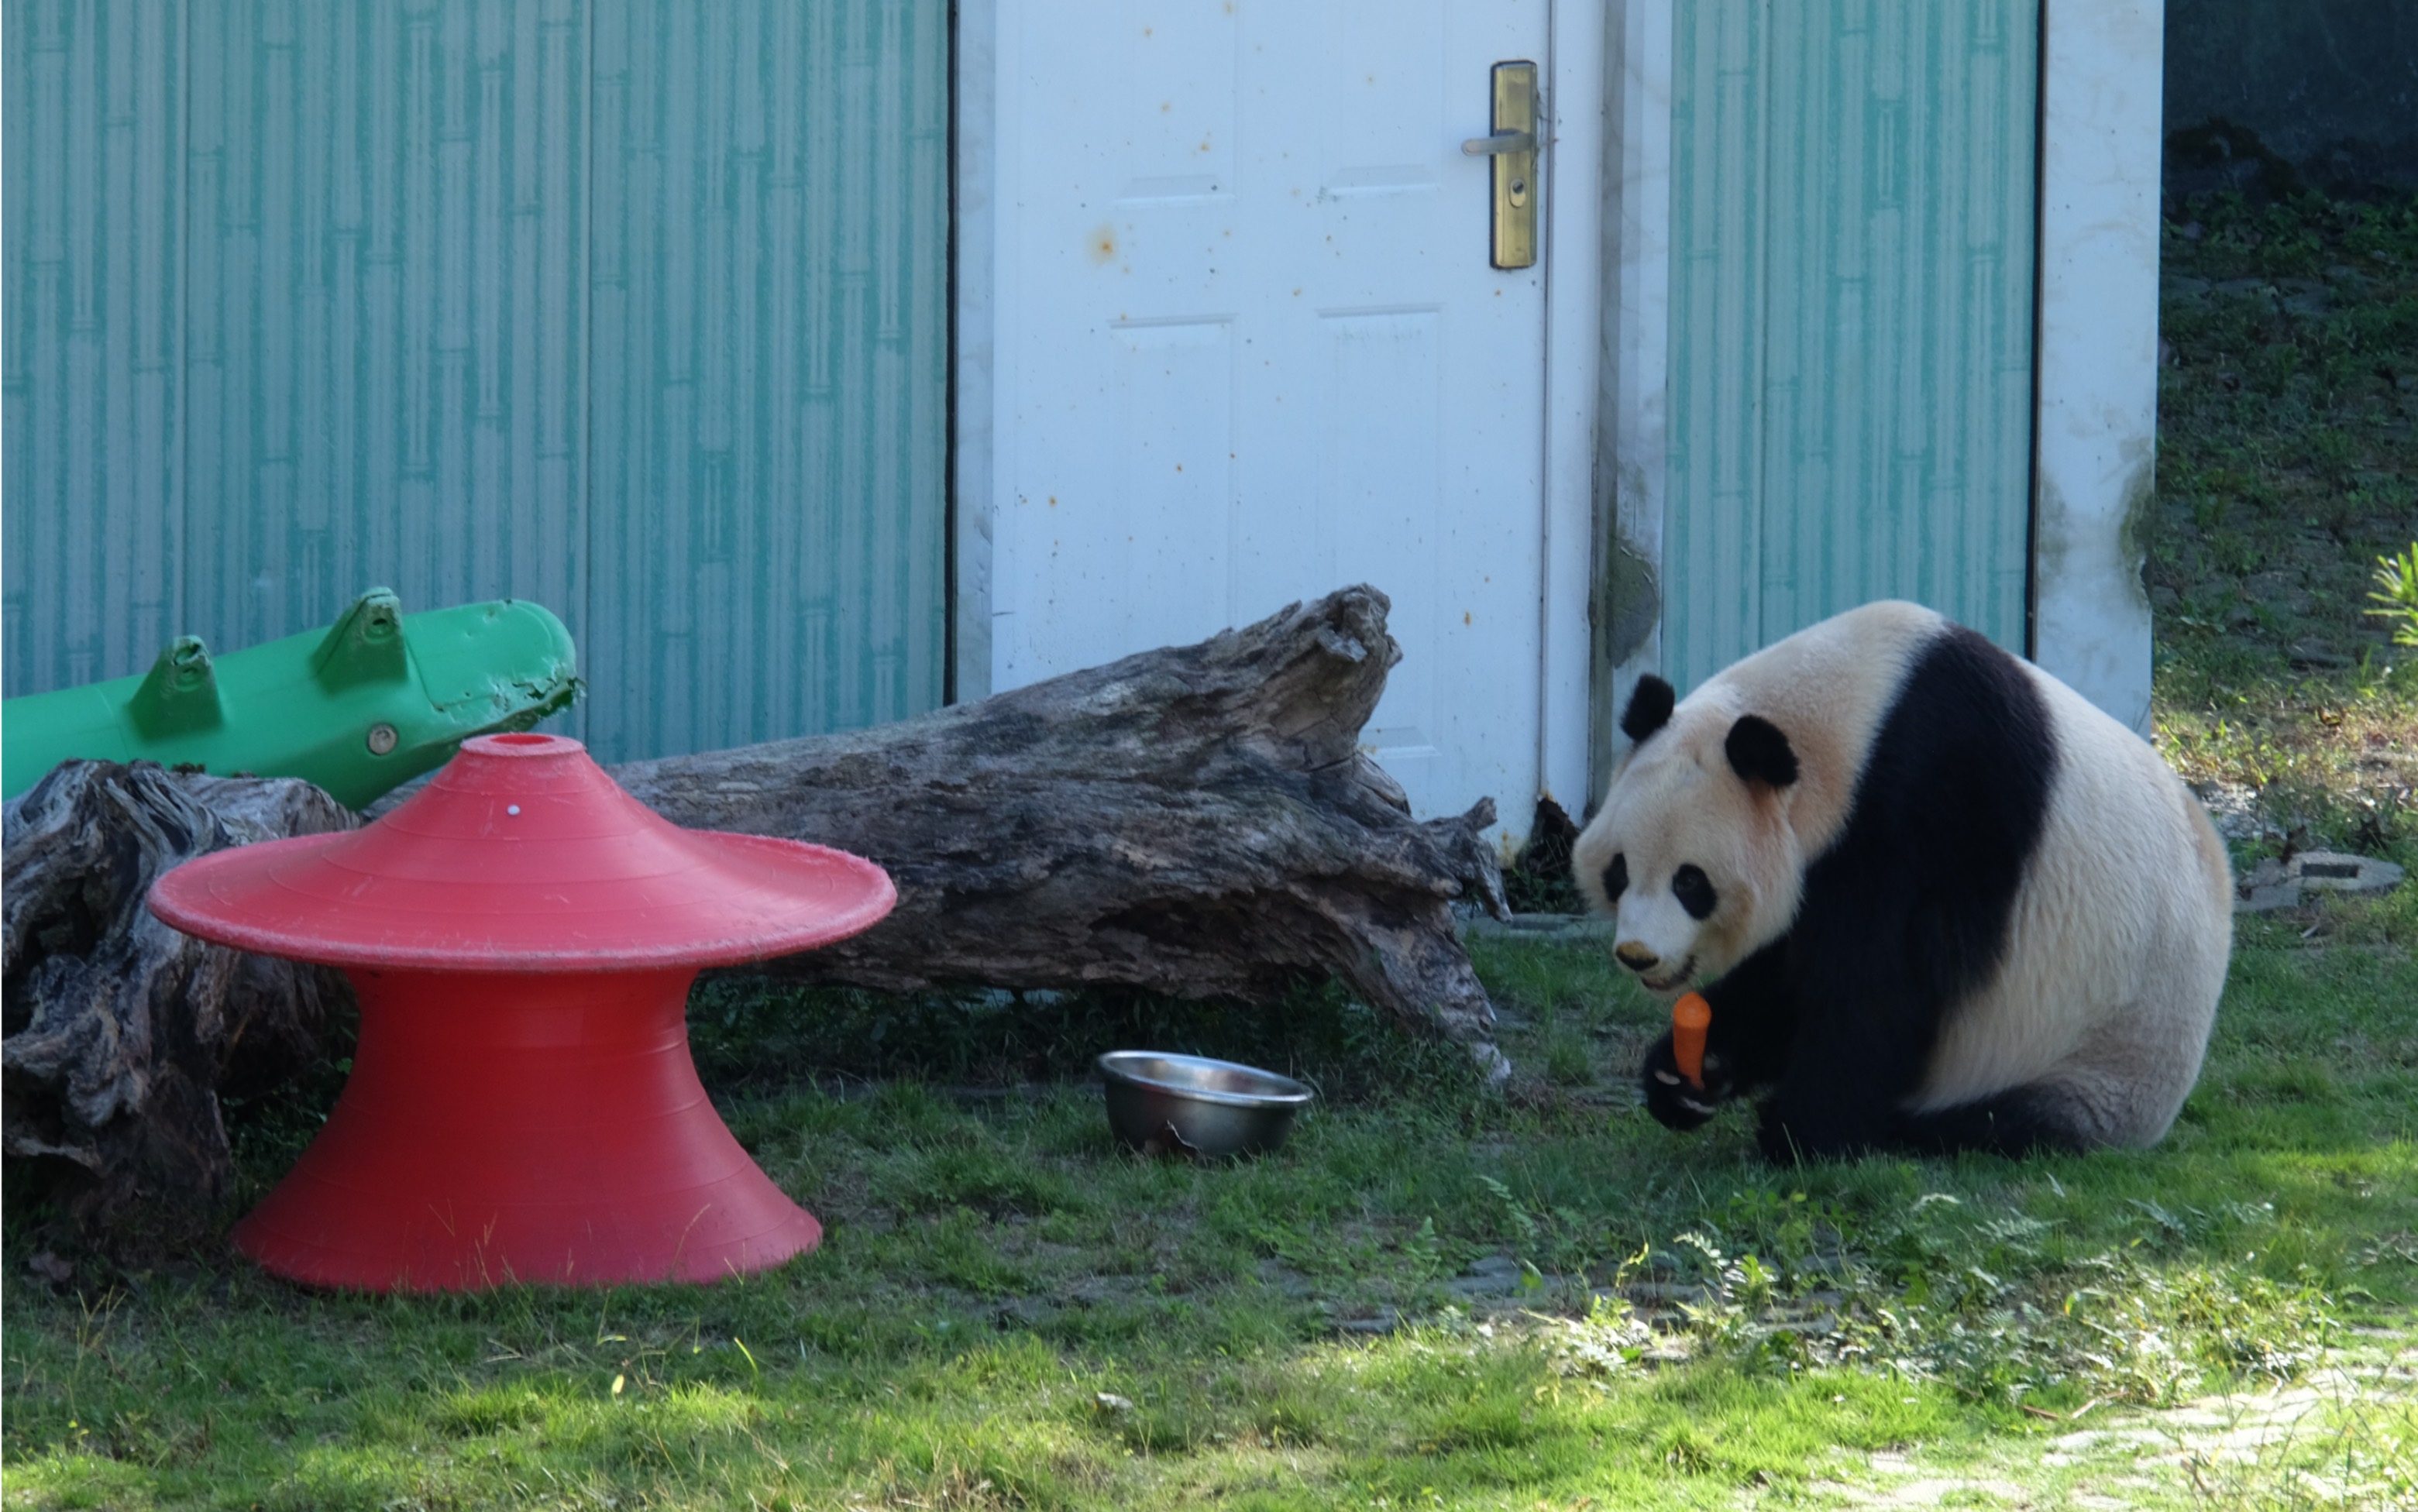 熊猫欢欢出生地点图片